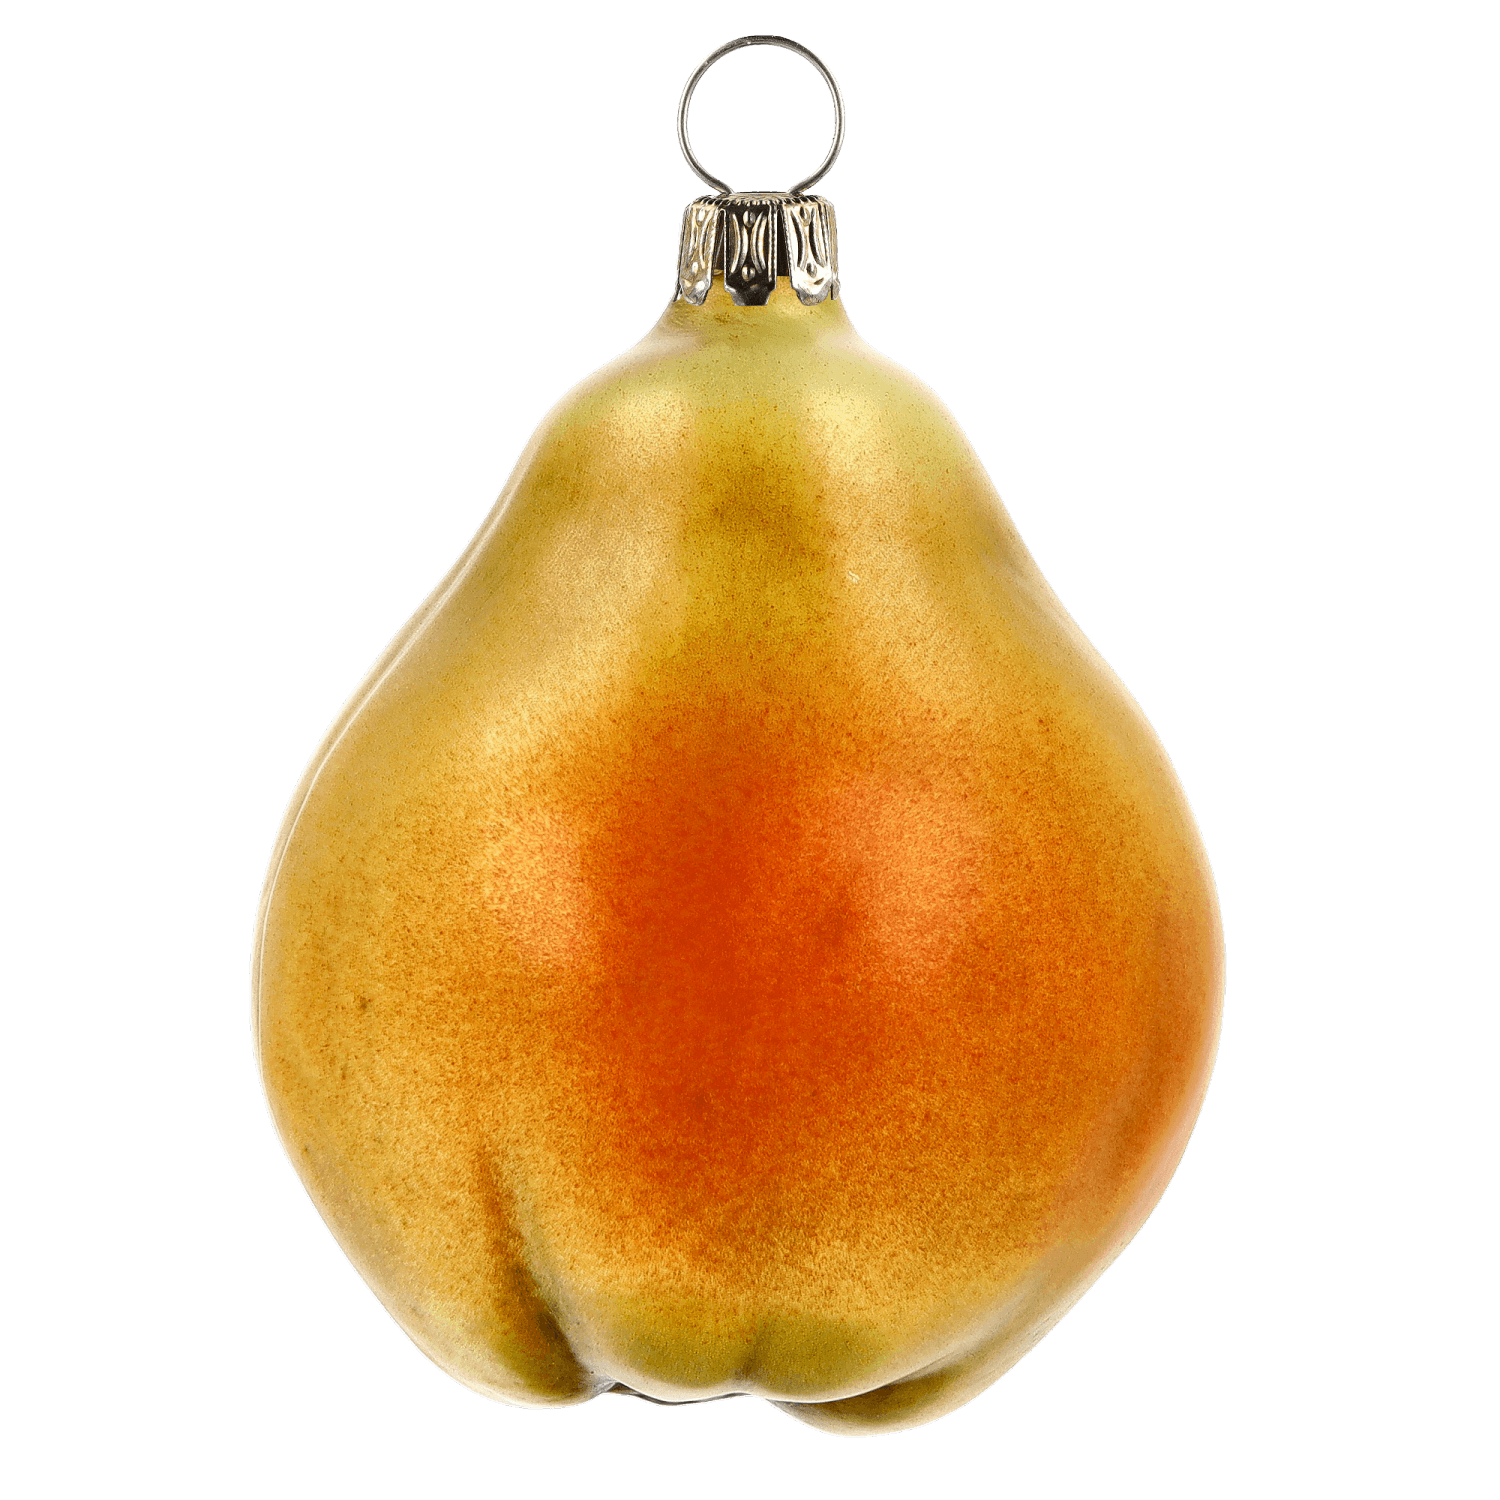 MAROLIN® - Glass ornament "Pear"